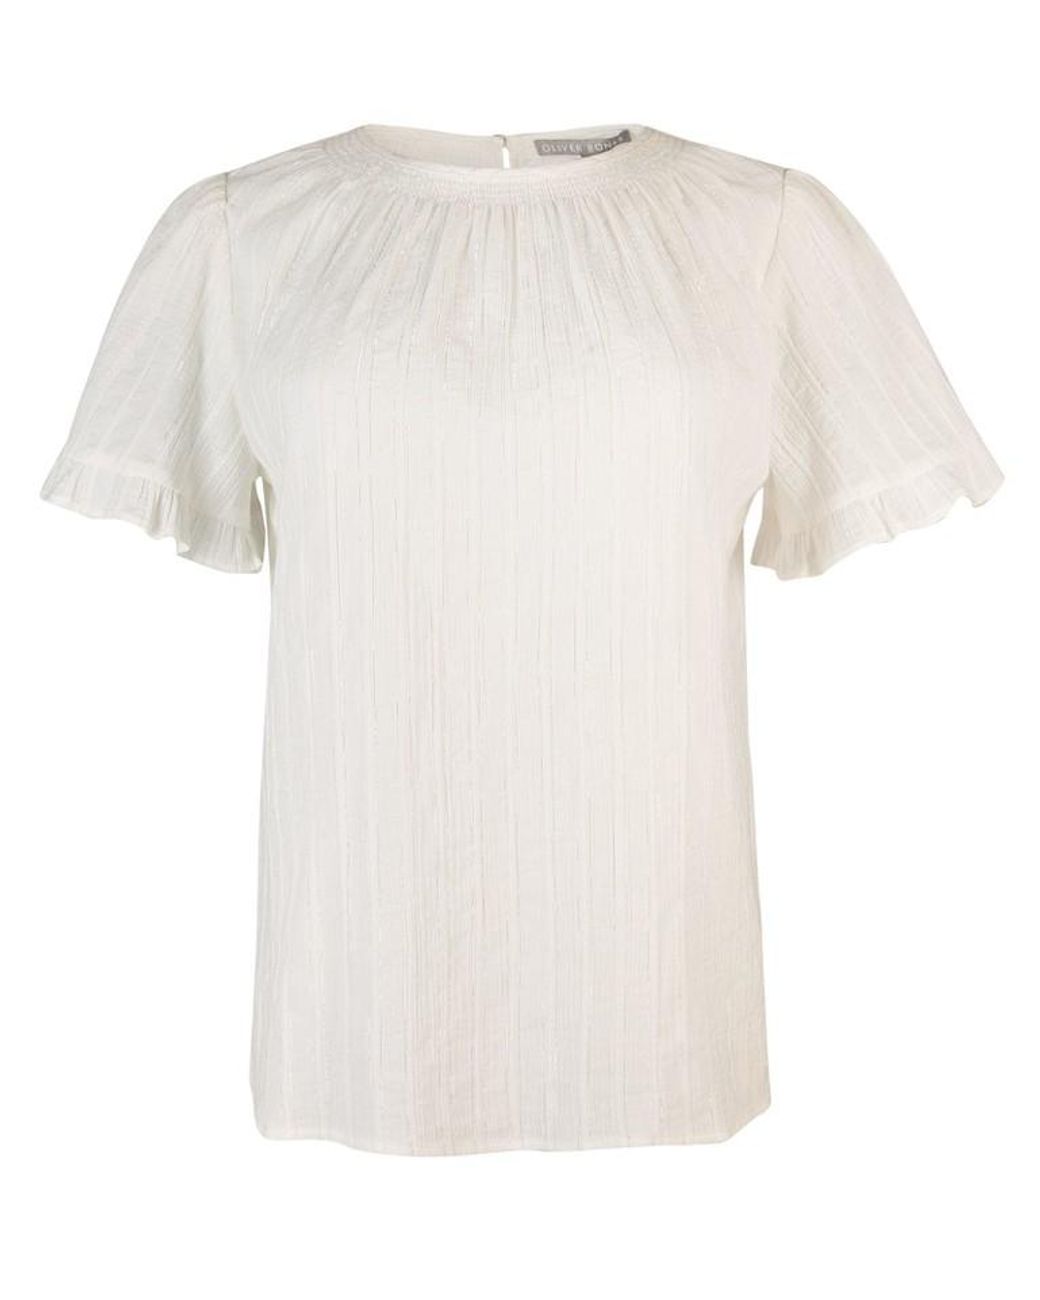 Oliver Bonas Sparkle Stripe Short Sleeved Blouse in White | Lyst